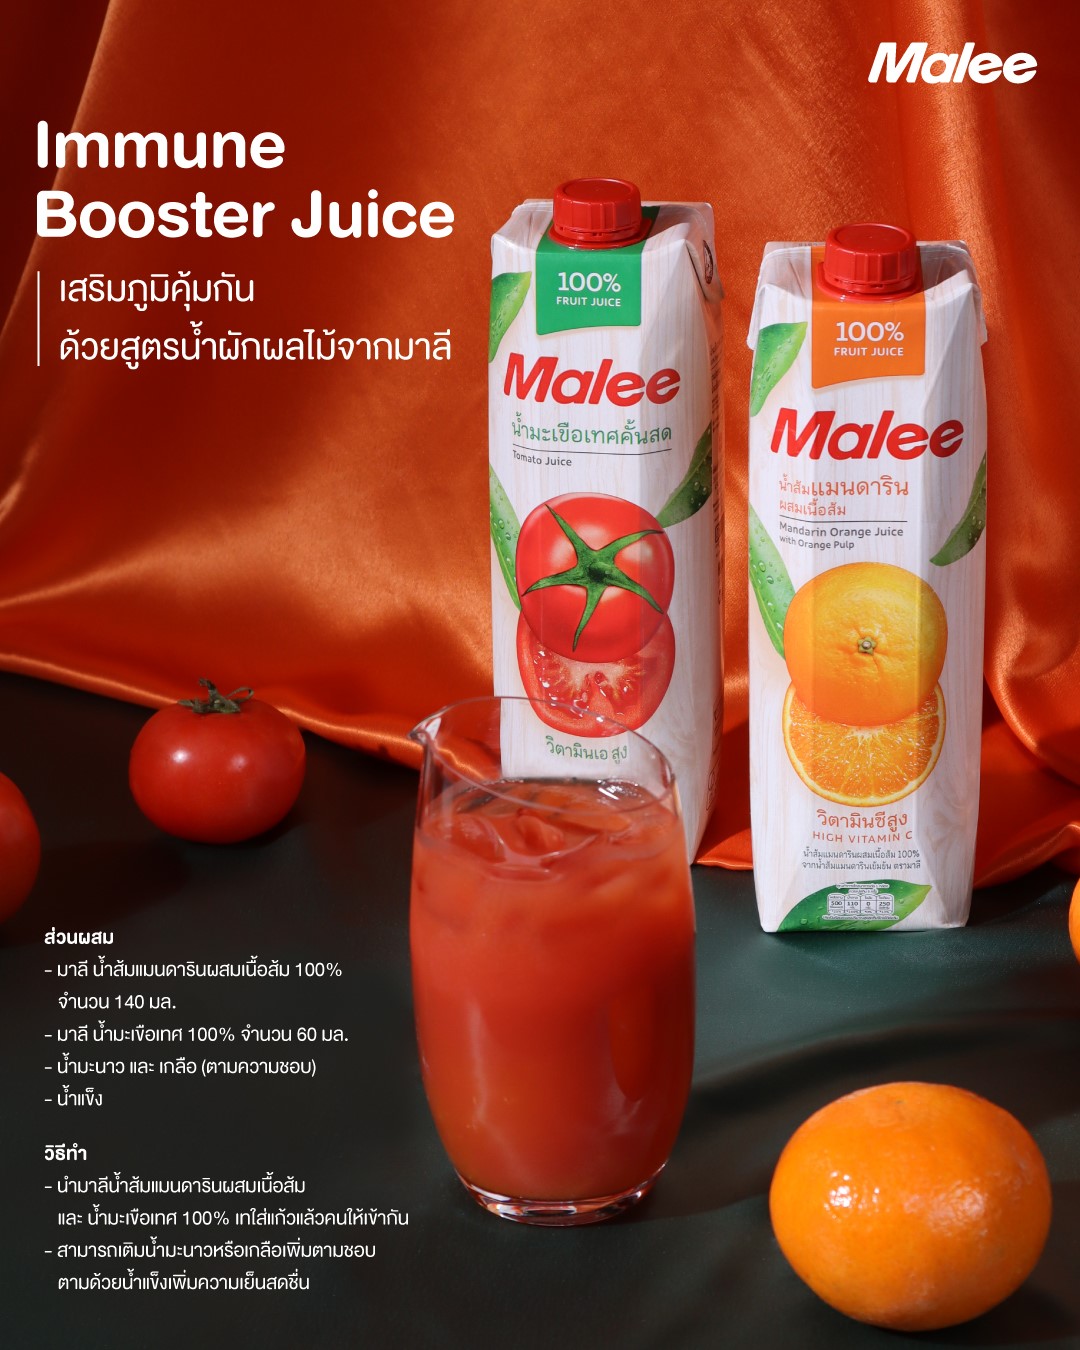 Immune Booster Juice